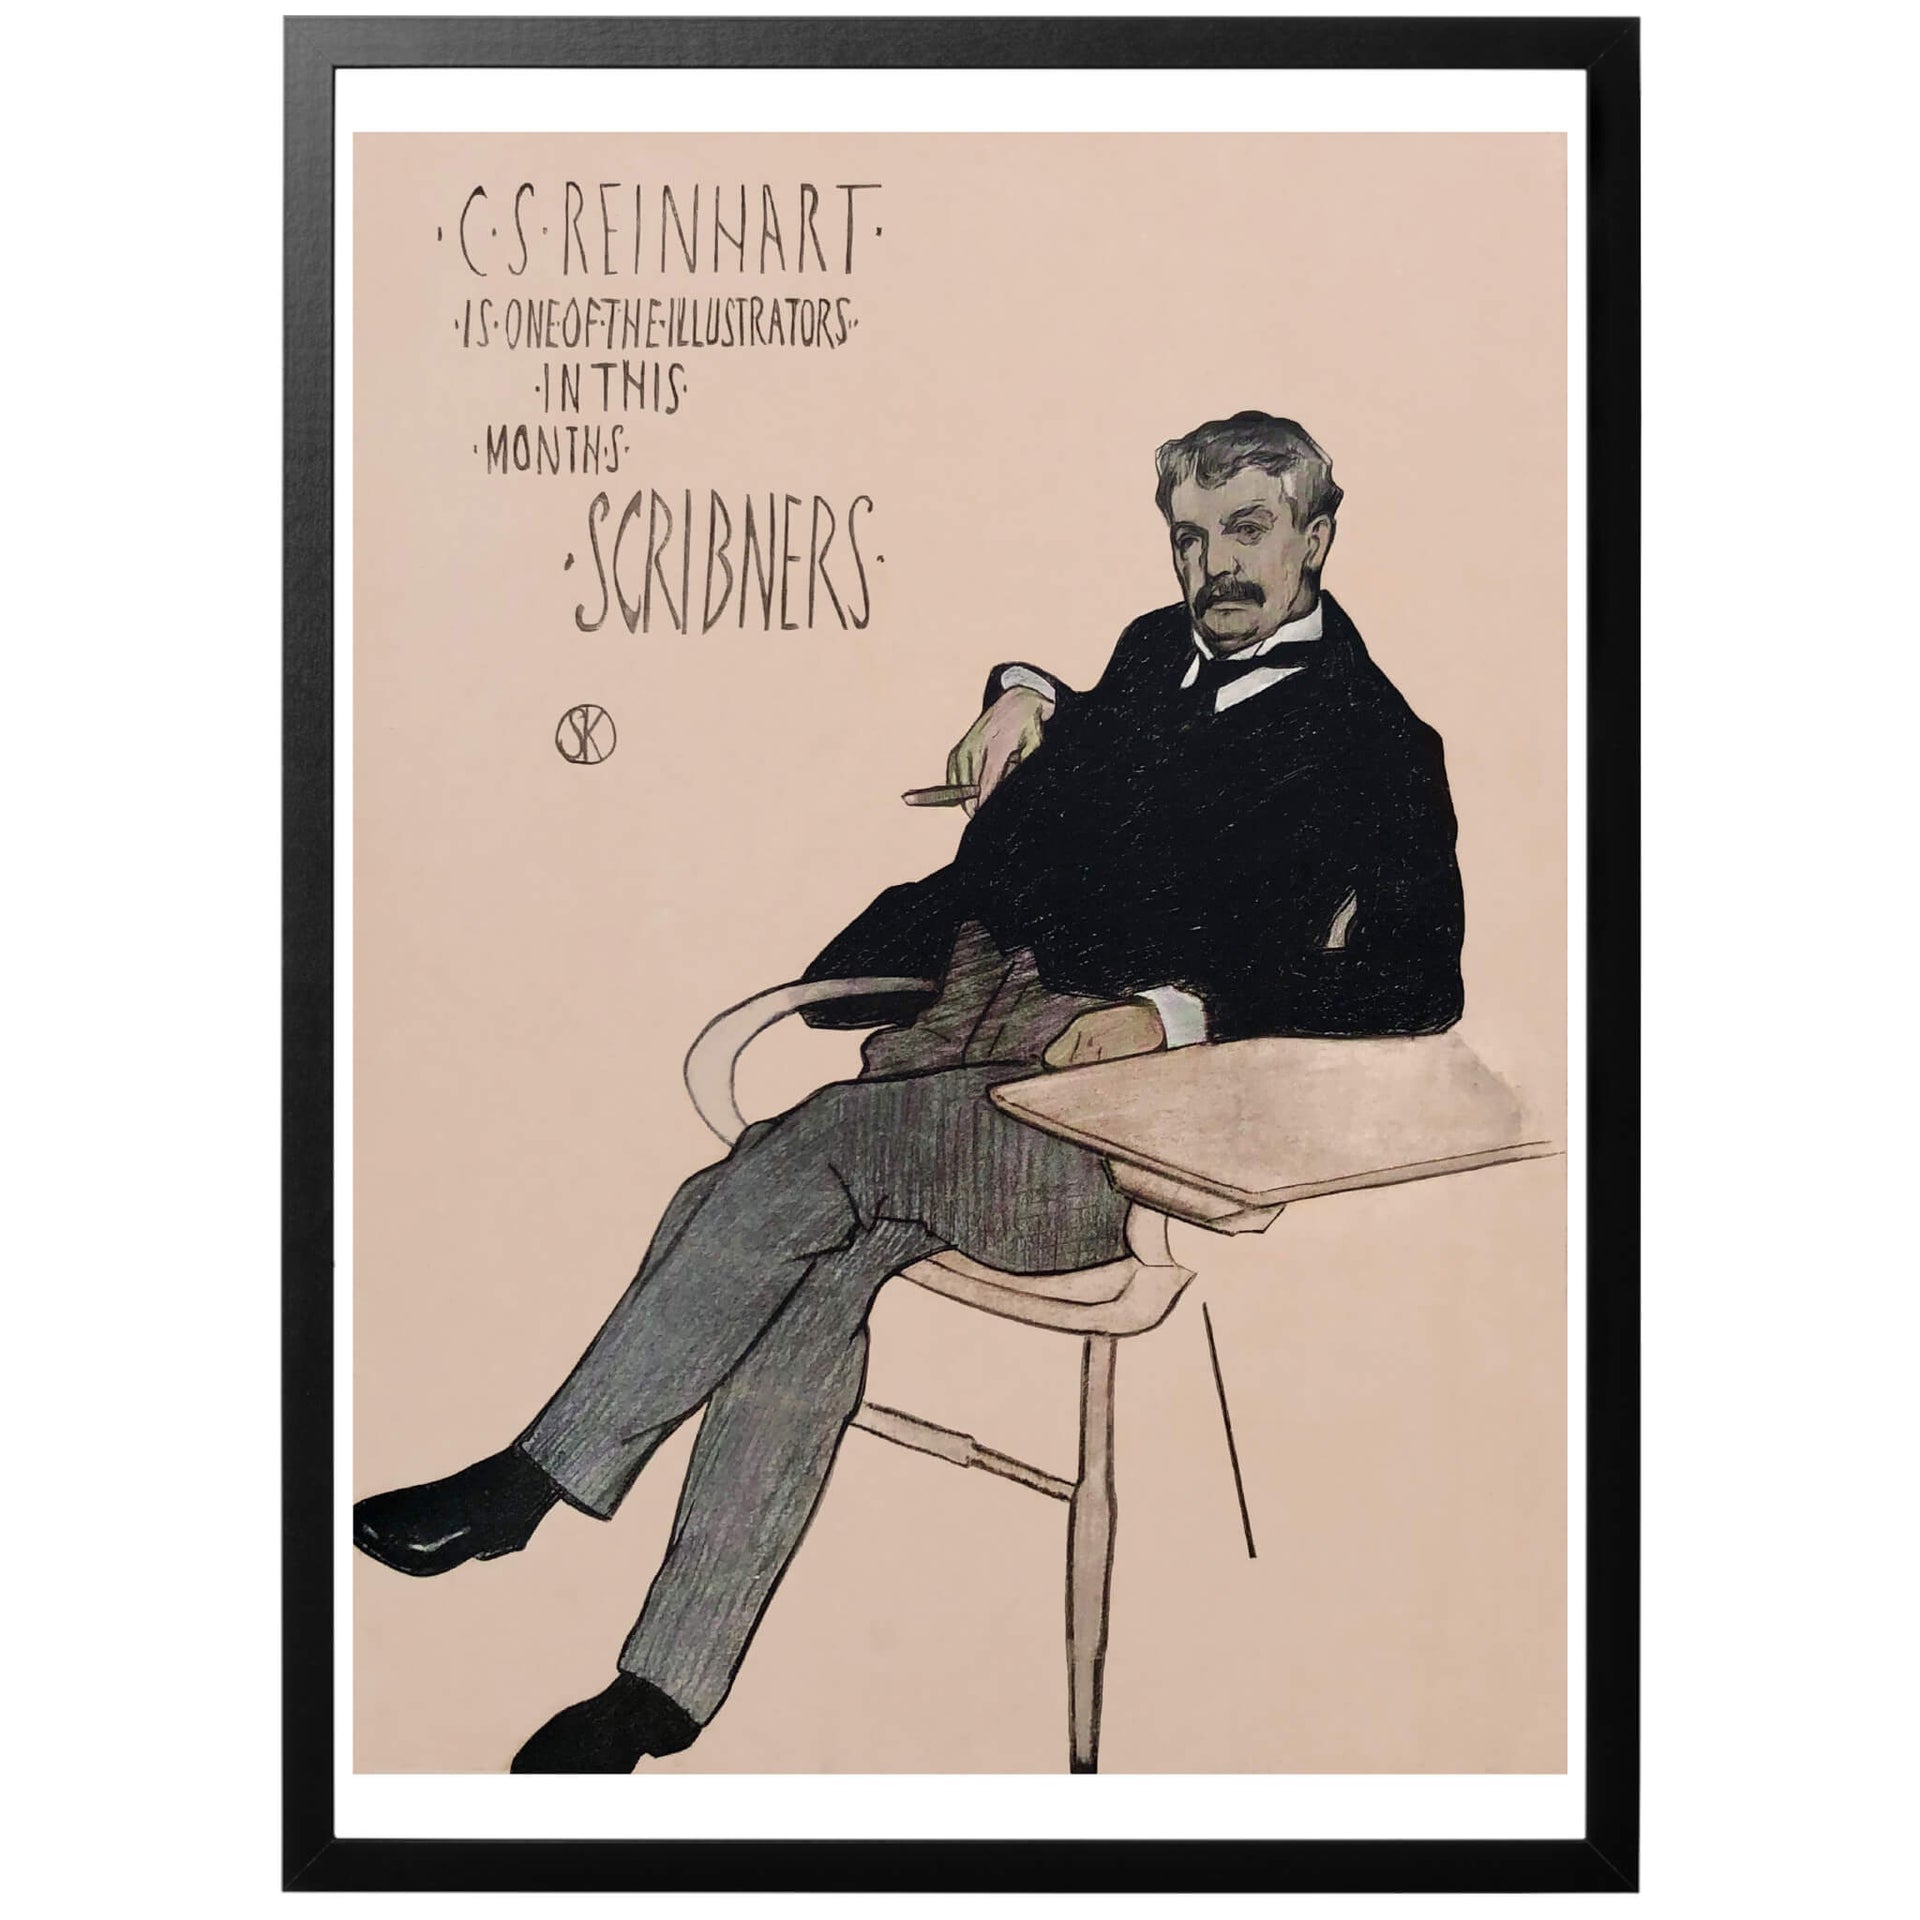 C. S. Reinhart Poster Sv - (Charles Stanley Reinhart) Amerikansk konstnärsposter från 1896 av Kendall, William Sergeant (1869-1938). Härlig poster för ditt hem!